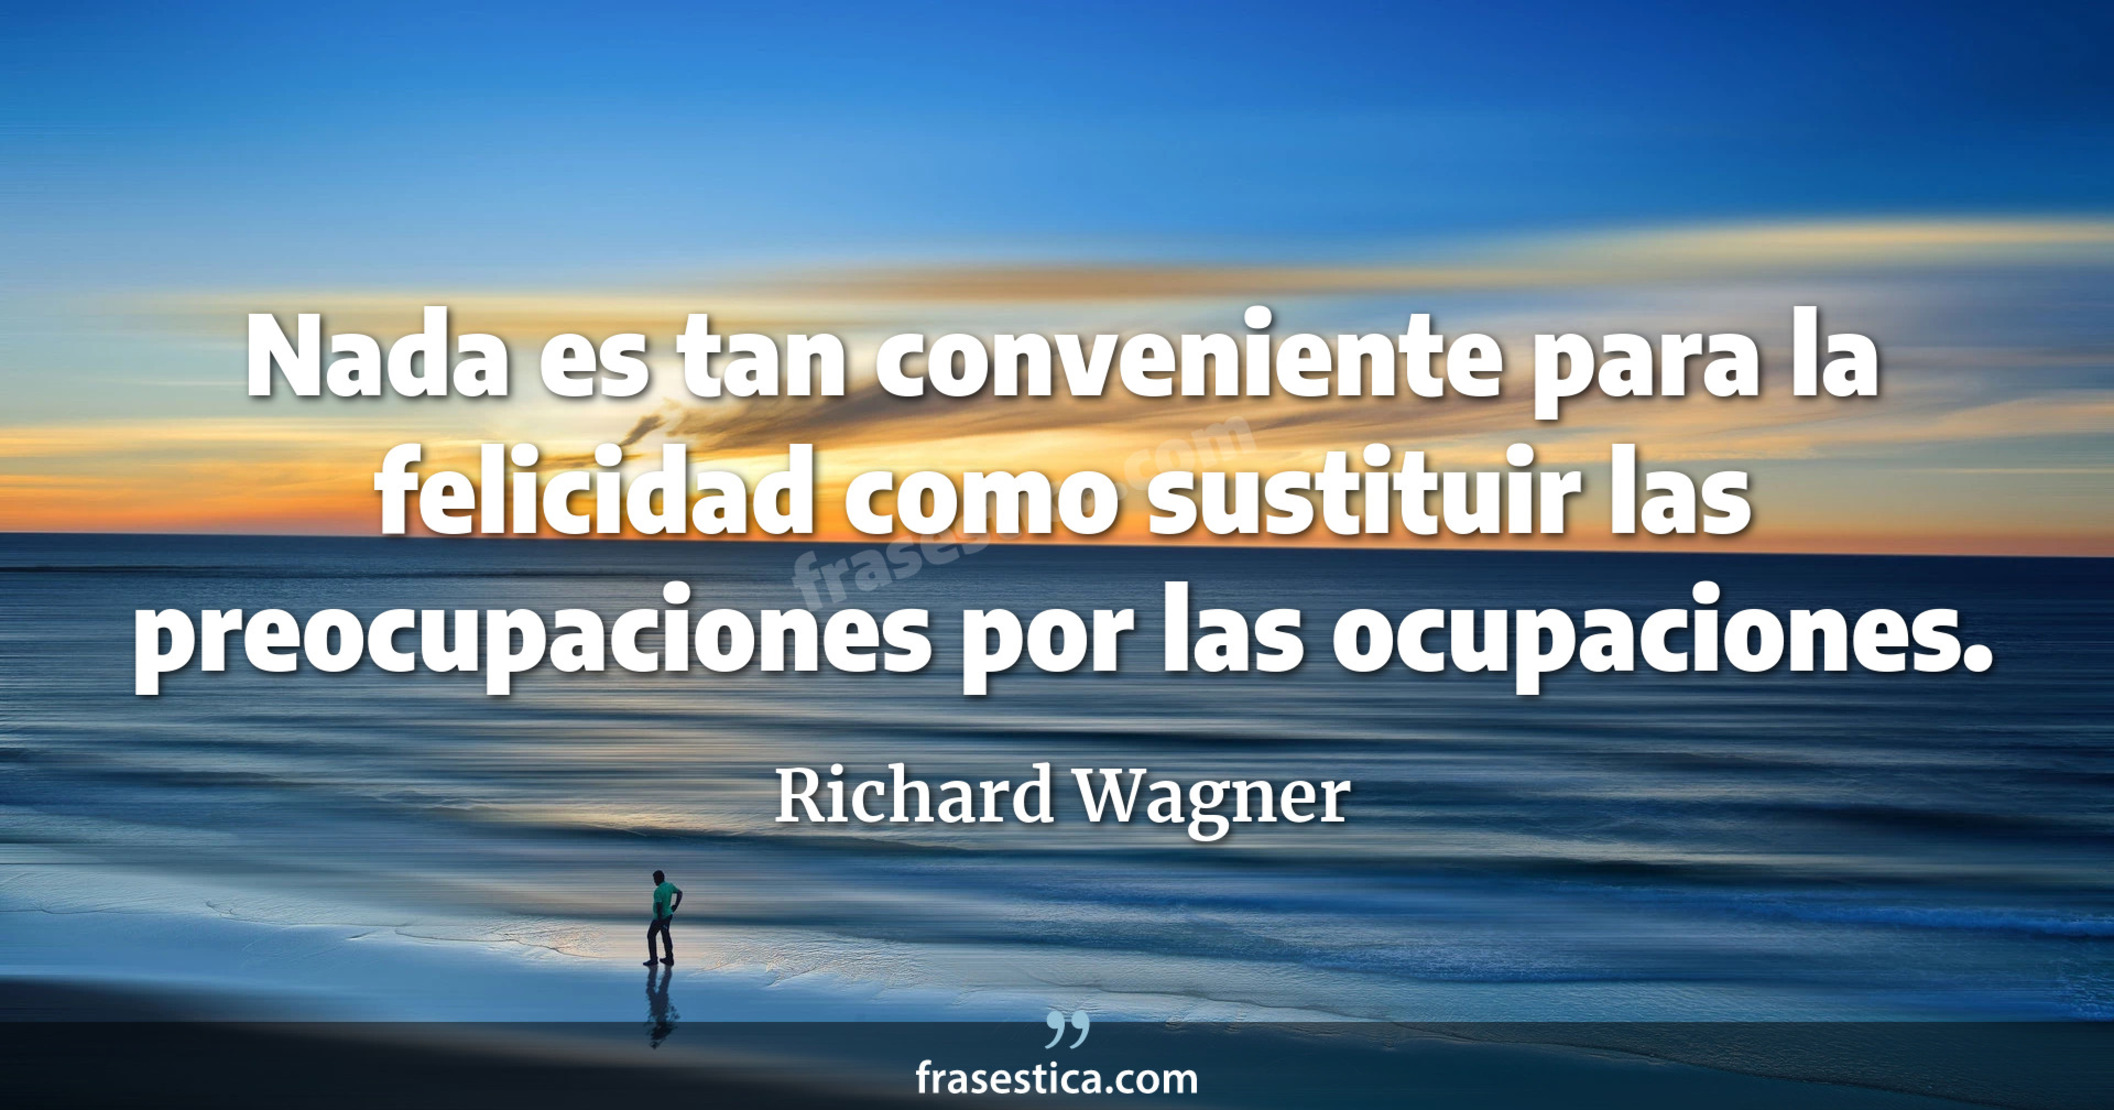 Nada es tan conveniente para la felicidad como sustituir las preocupaciones por las ocupaciones. - Richard Wagner